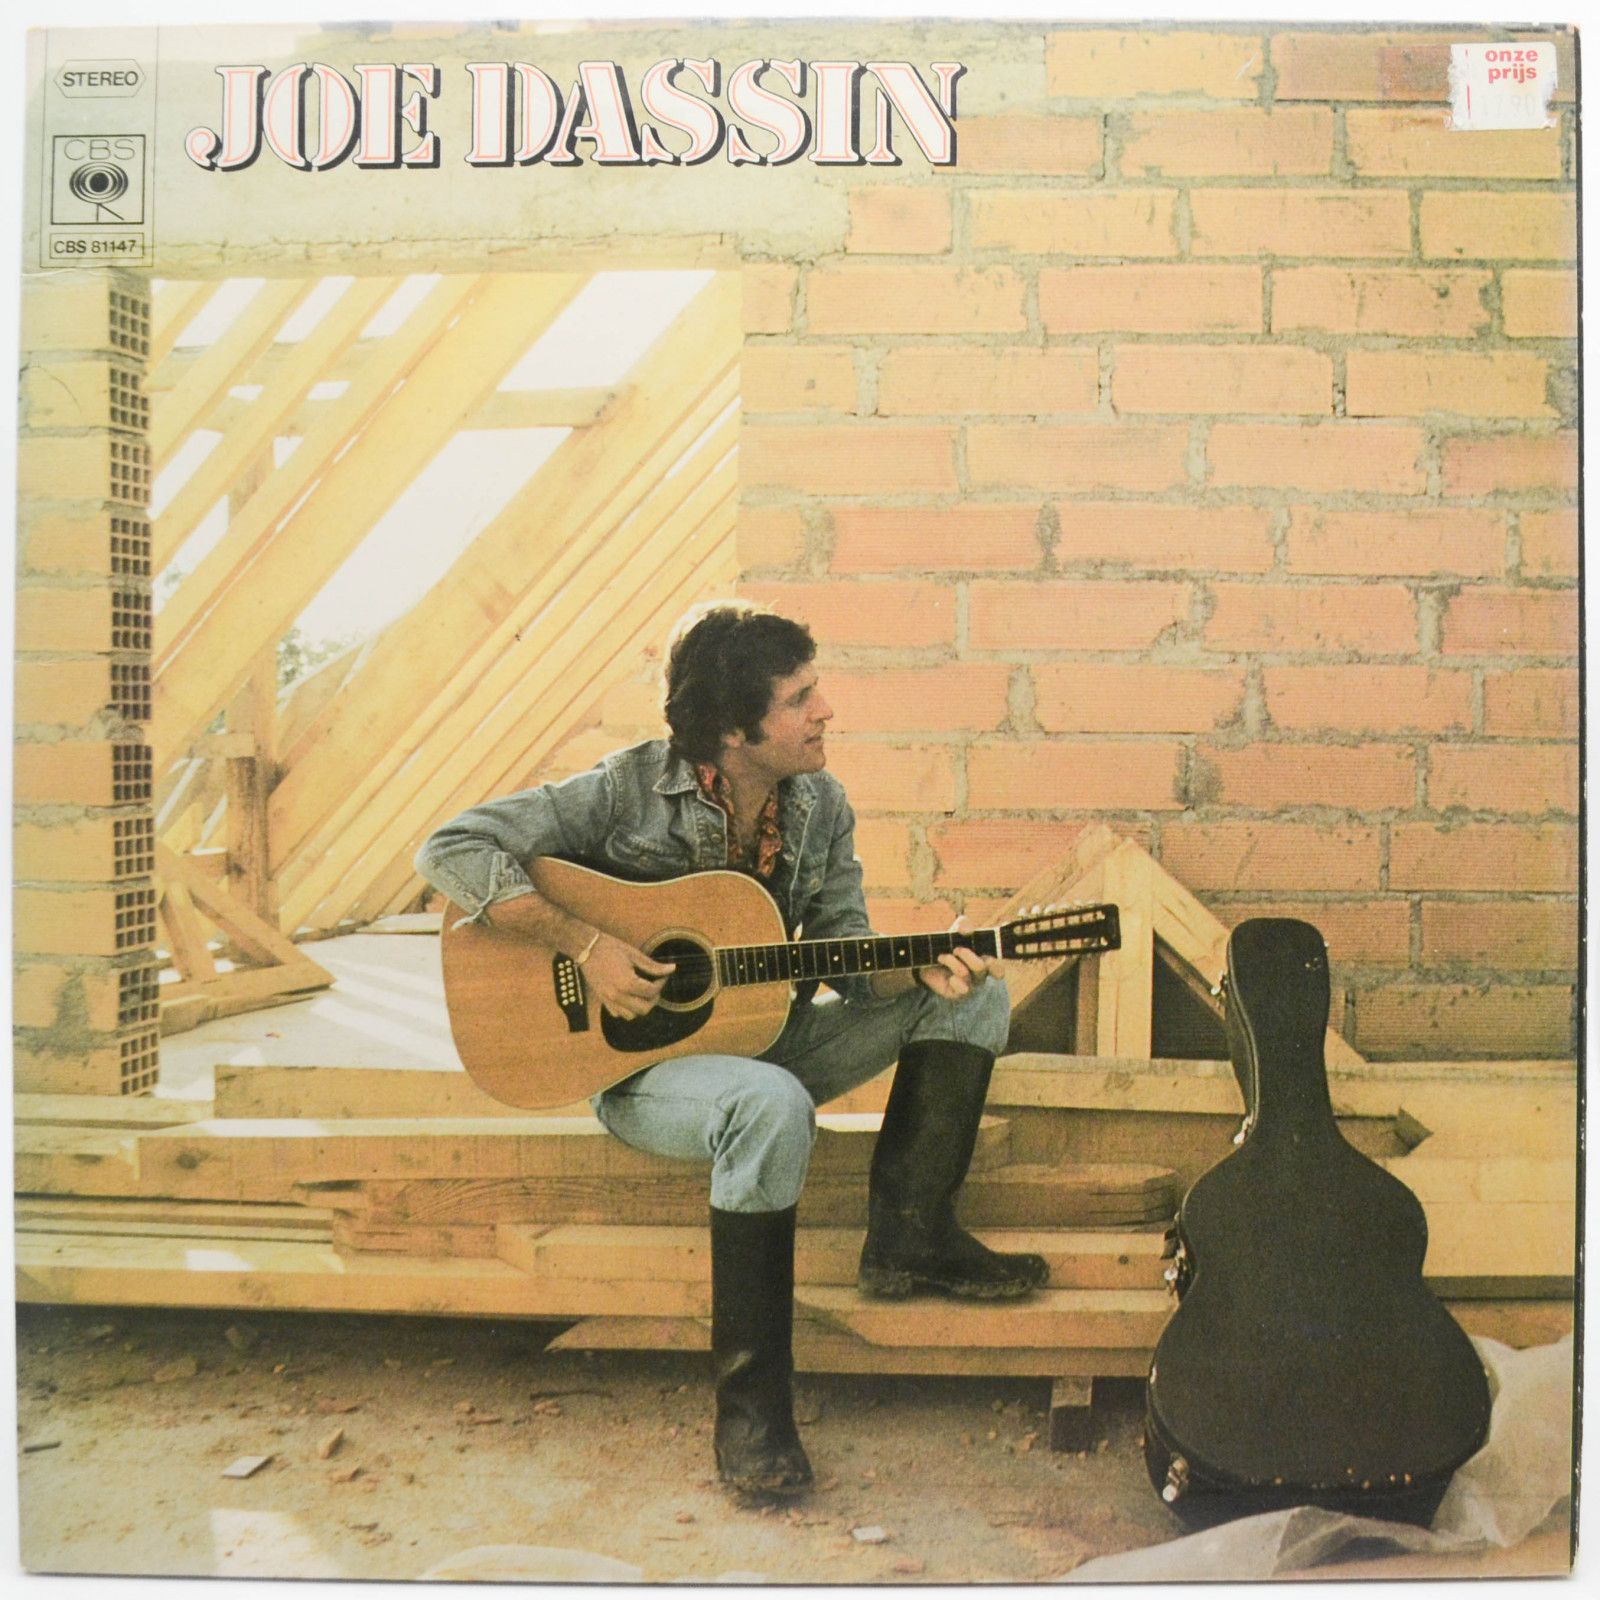 Joe Dassin — Joe Dassin, 1975